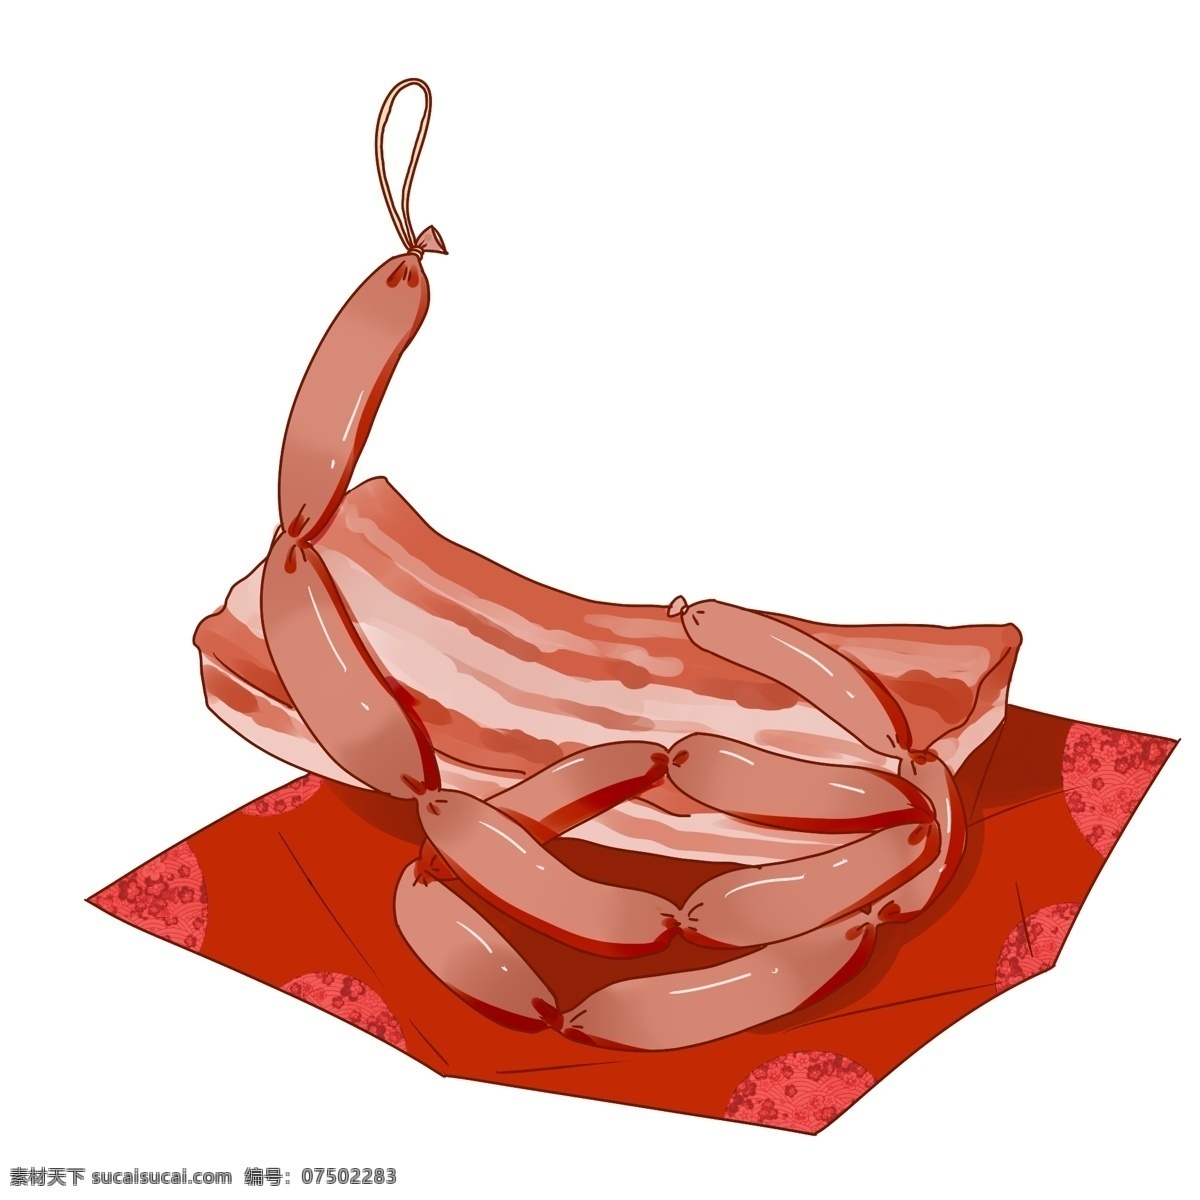 卡通 手绘 中国 传统 春节 腊肉 节日 美食 美味 中国风 手绘腊肉 卡通腊肉 美味腊肉 传统美食 特产